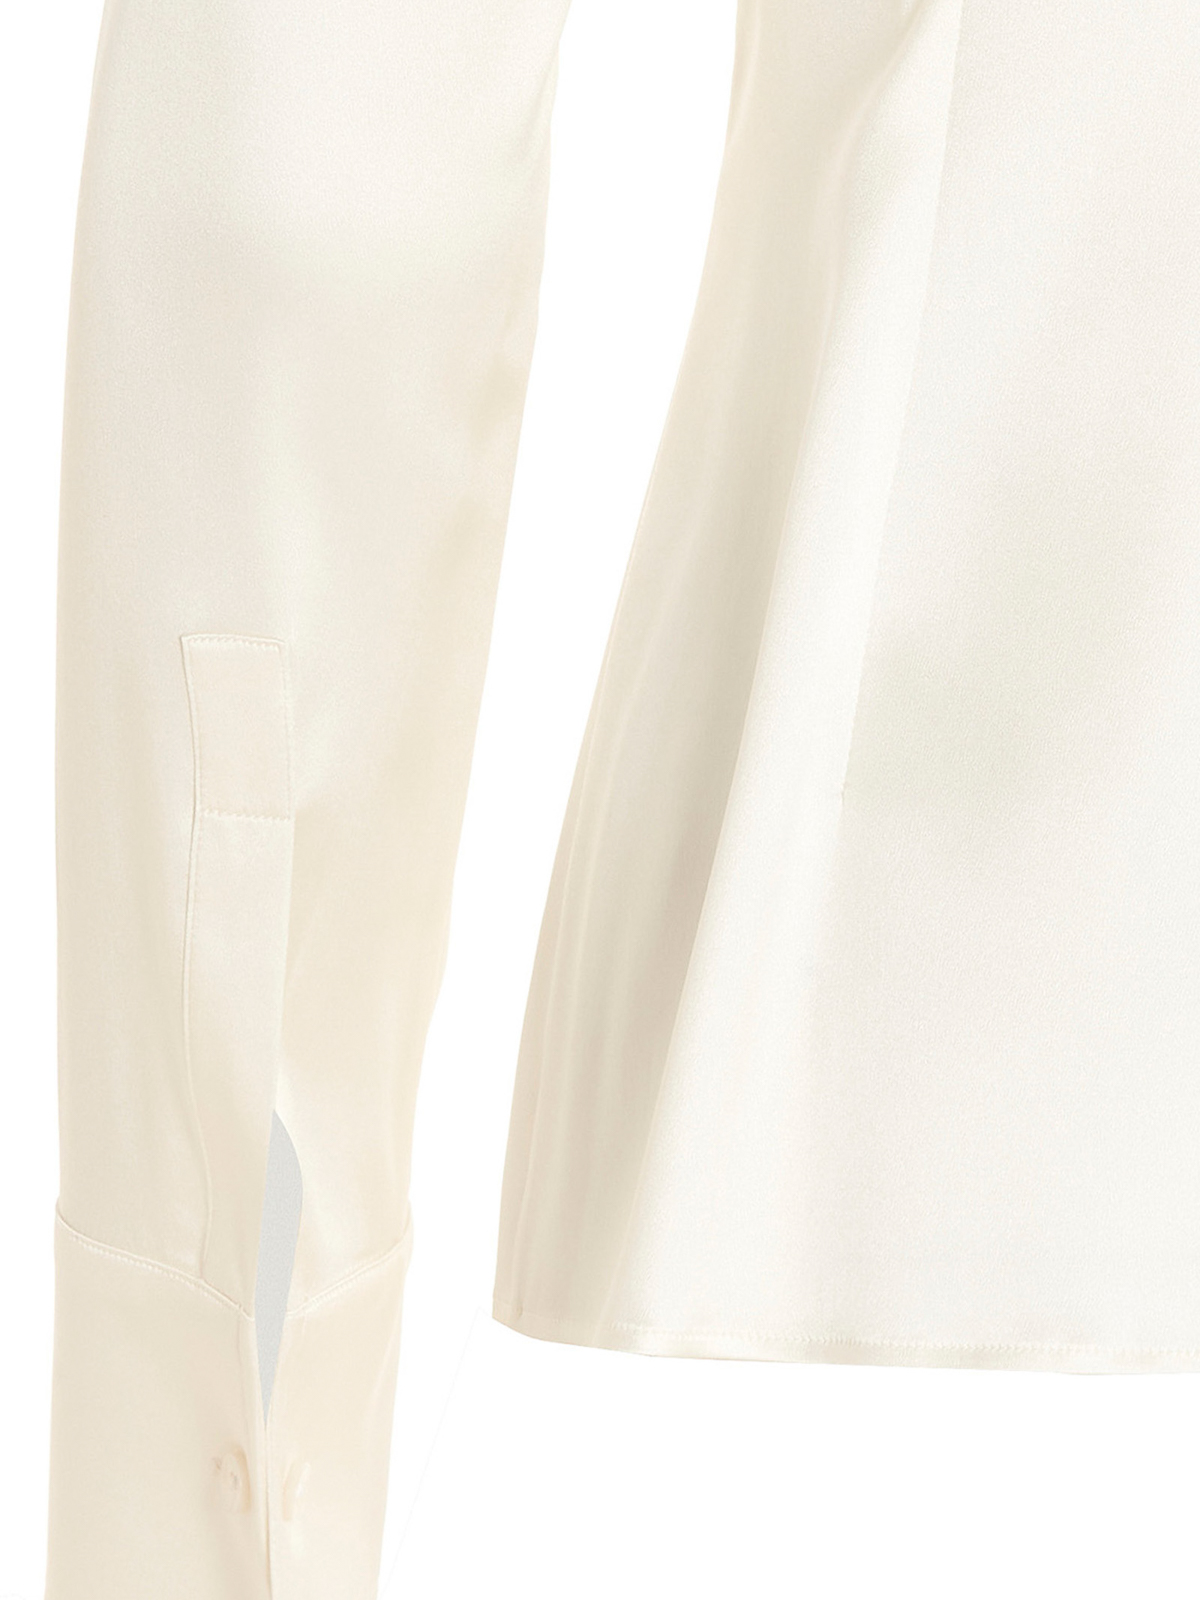 Shop Dolce & Gabbana Stretch Satin Fabric Shirt In Blanco